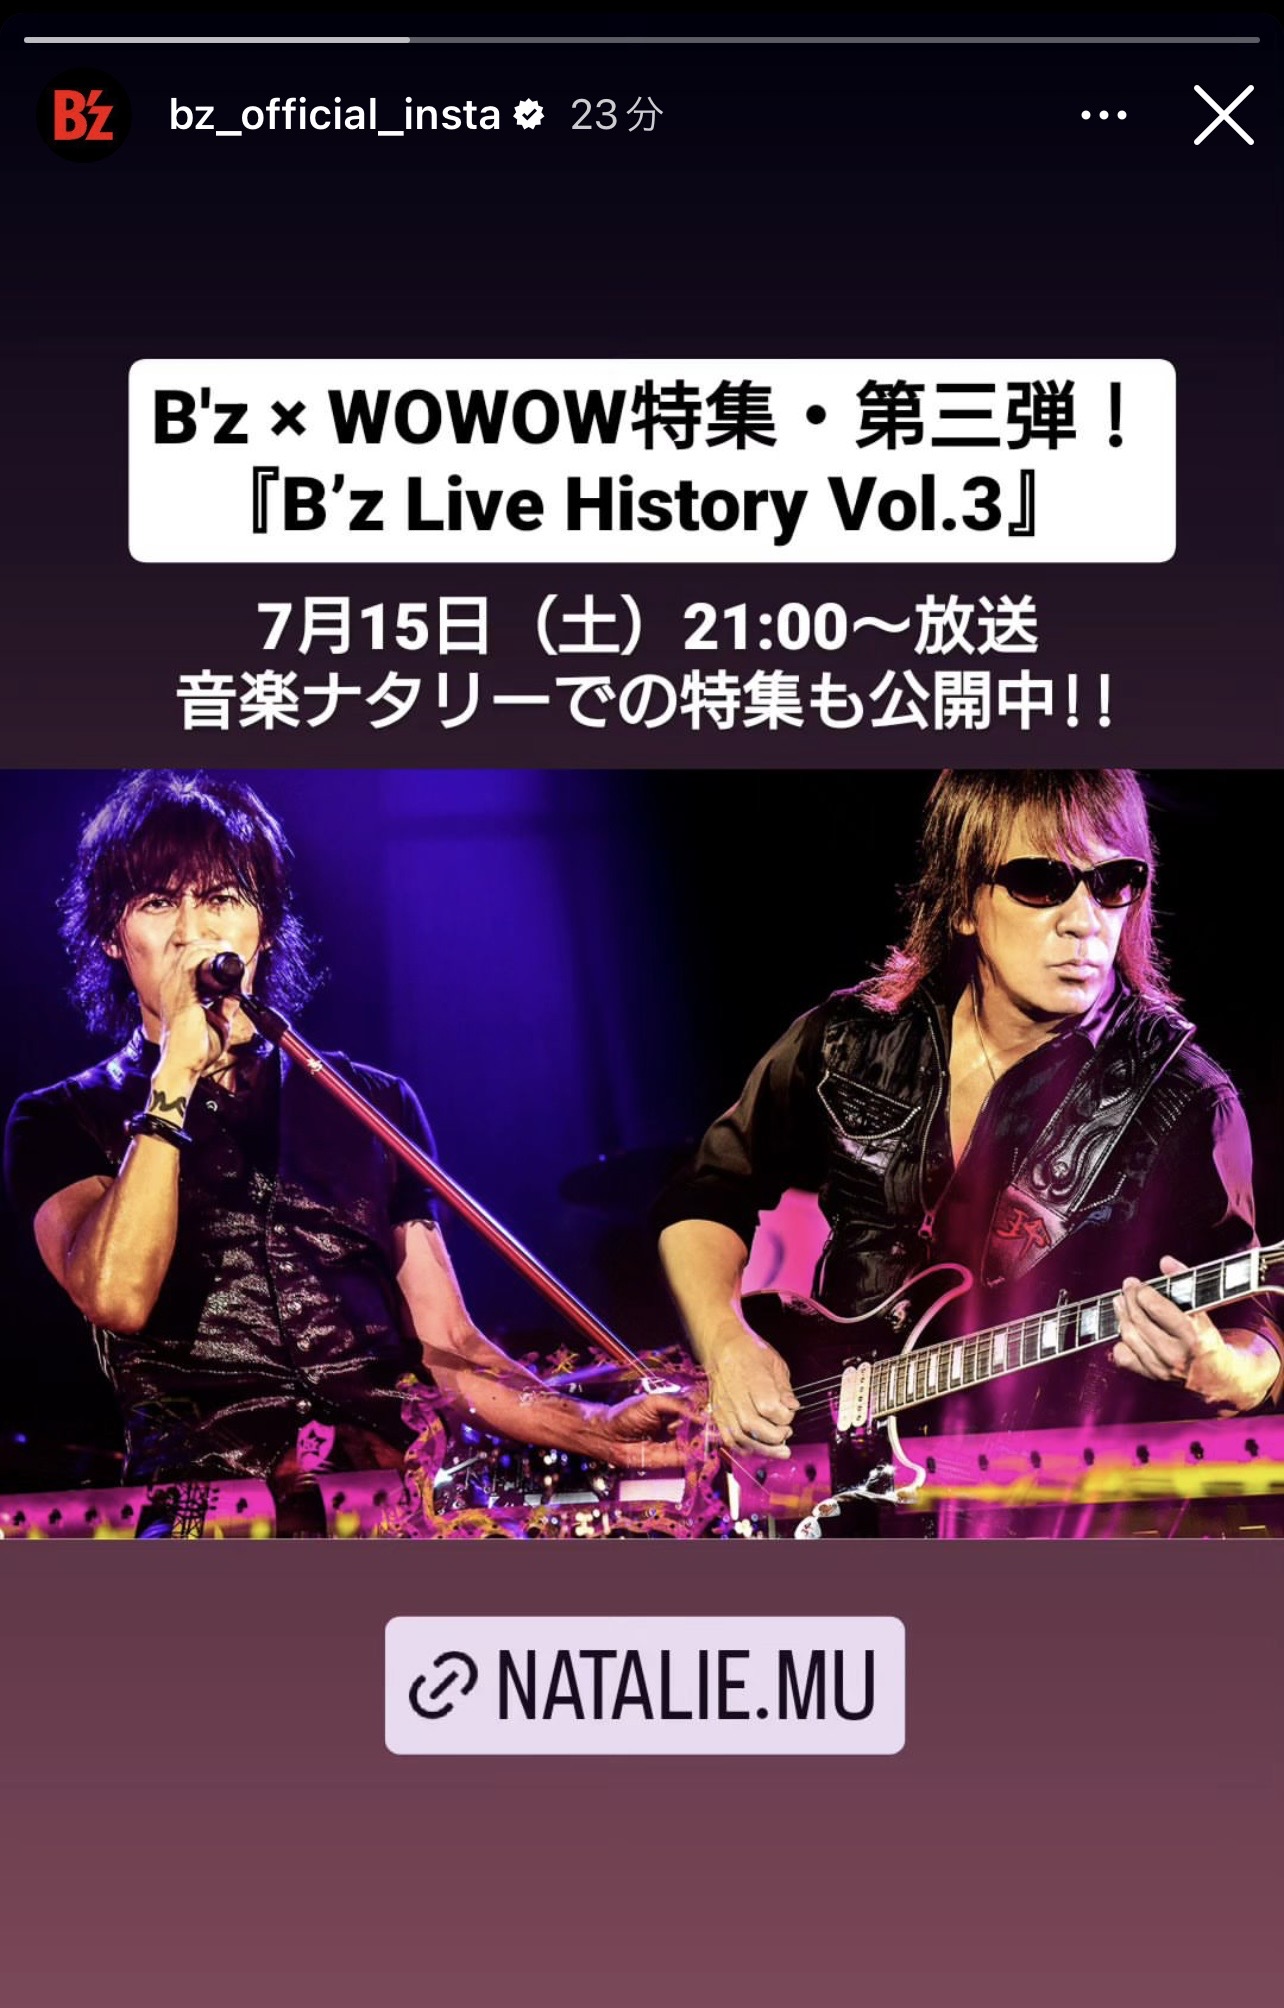 音楽ナタリーで公開されたWOWOW『B'z Live History Vol.3』との連動特集記事を告知するB'z公式Instagramの投稿